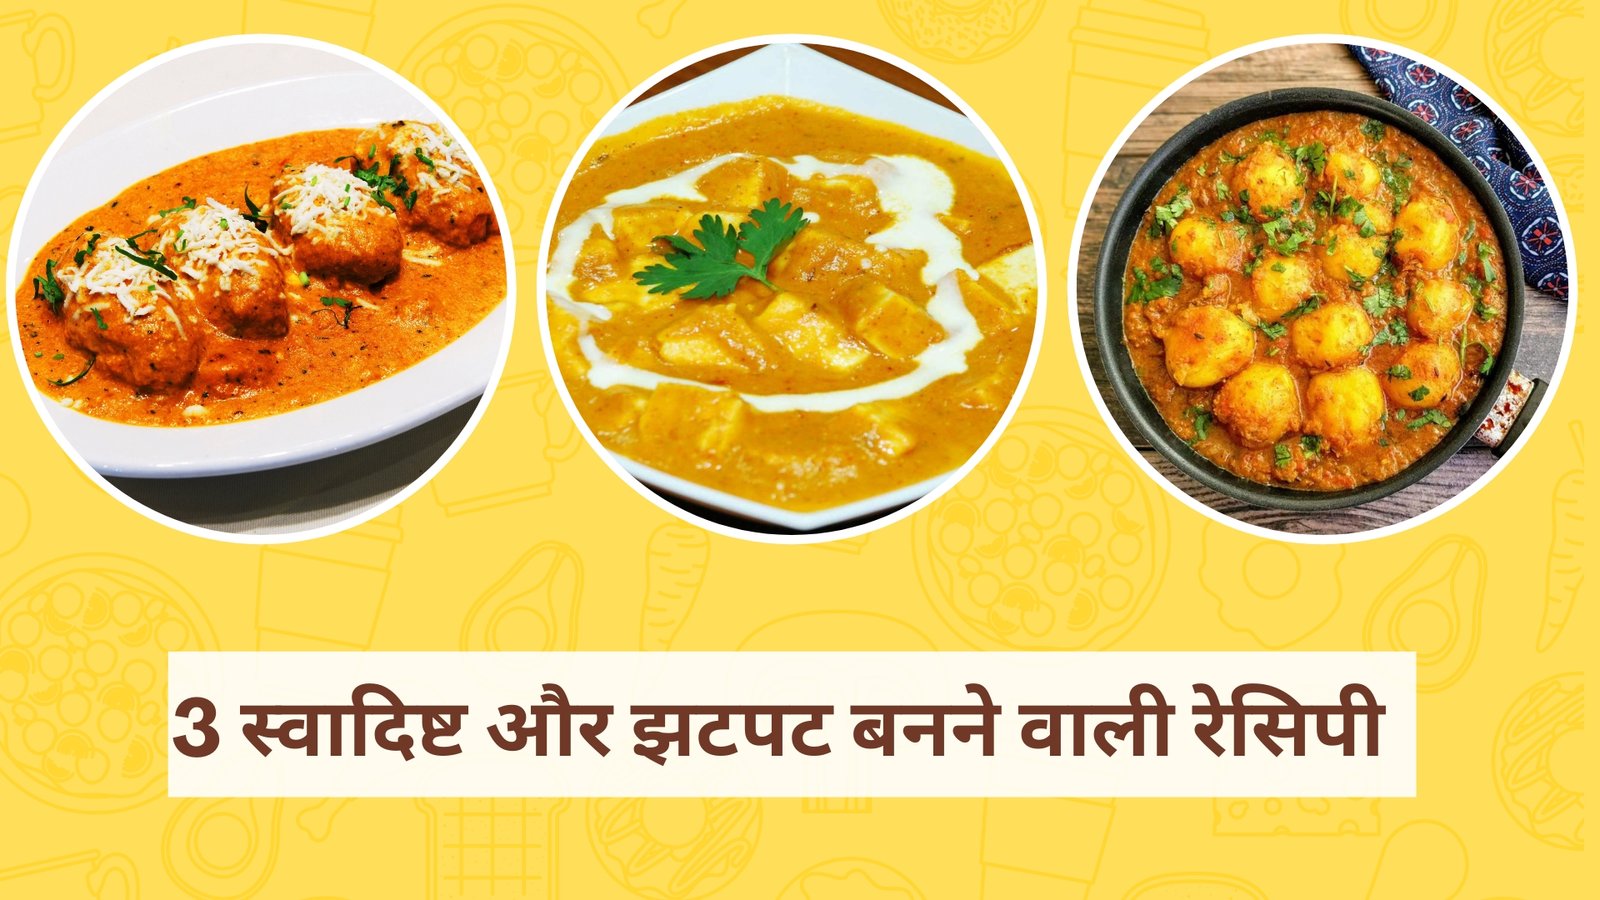 Dinner Recepies In Hindi Easyhindiblogs 